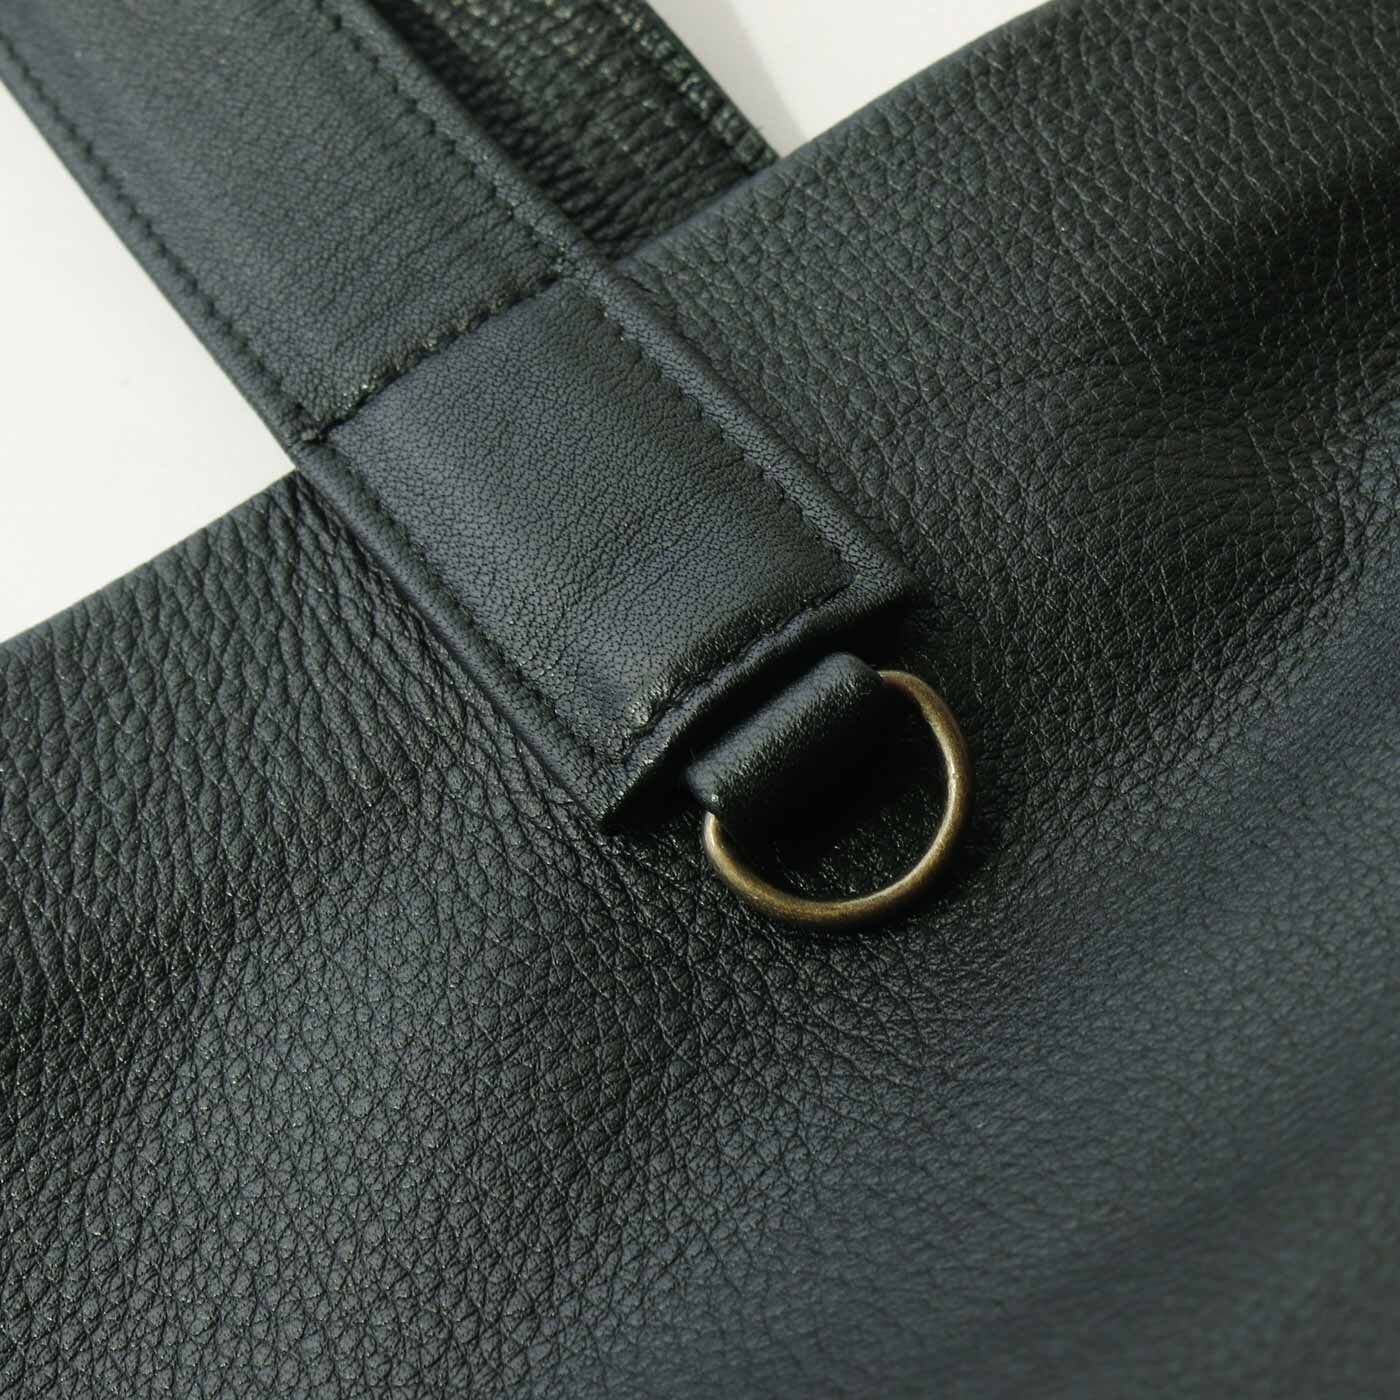 ＆Stories|福岡の鞄作家が作った 職人本革のホエールトートバッグ〈ブラック〉|キーリング金具付き。お手持ちのバッグチャームなどを付けてアクセントにしても素敵。